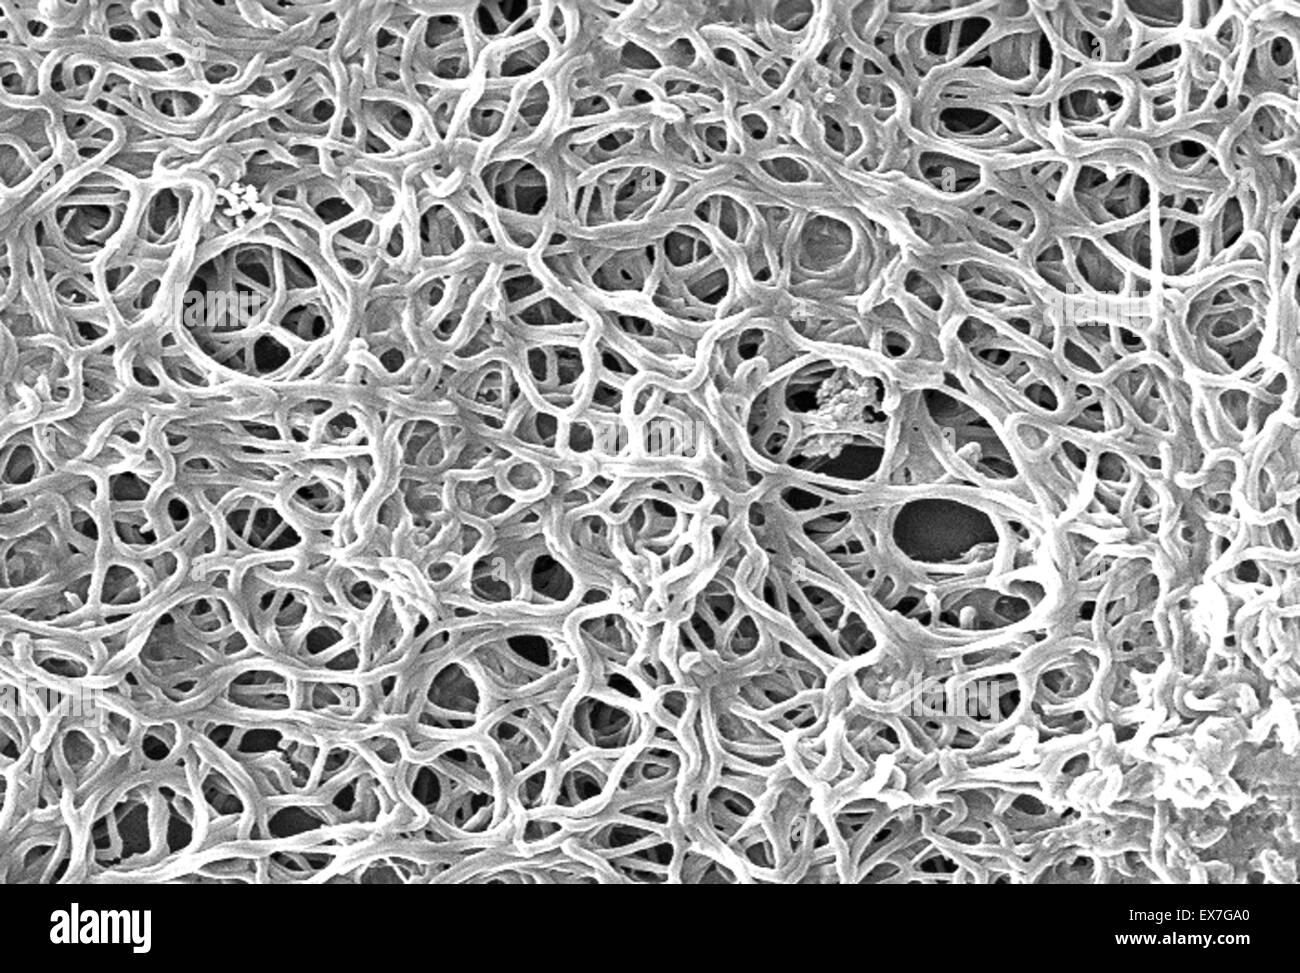 Micrografia elettronica a scansione di Borrelia burgdorferi spirocheta batteri Foto Stock